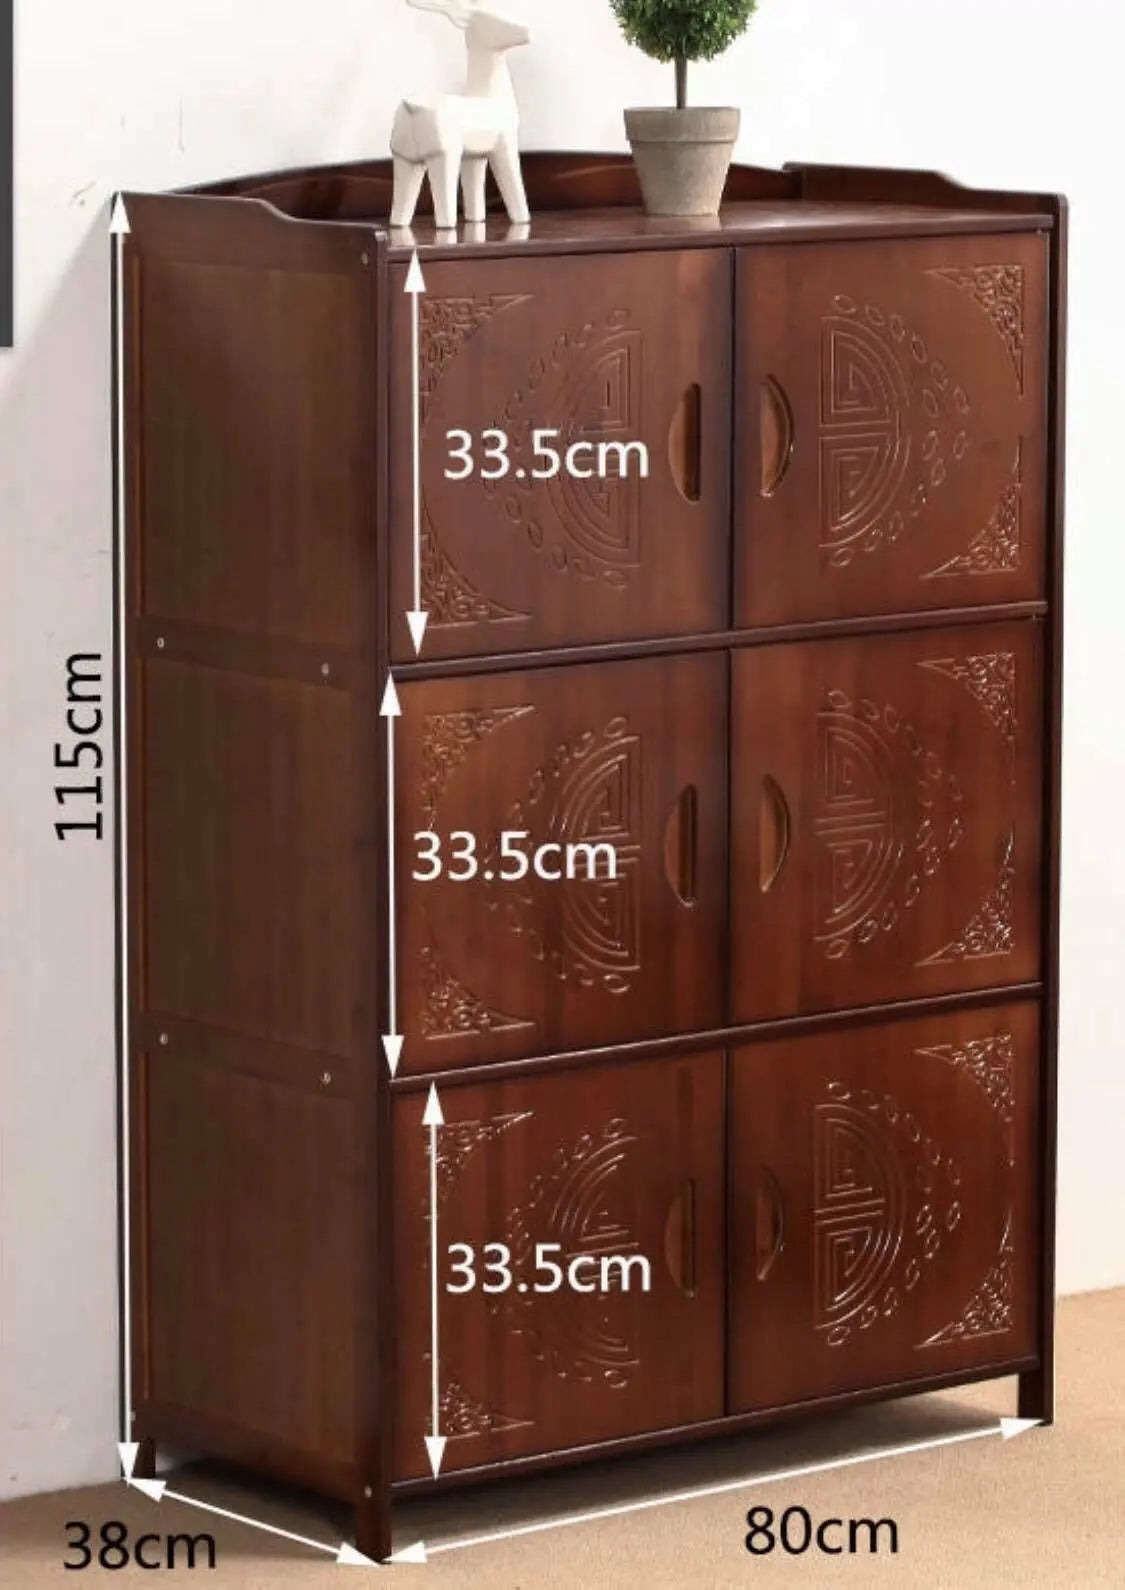 Bamboo Bookcase Bookshelf Cabinet Shoe Case Storage Organizer With Doors Antique Style everythingbamboo